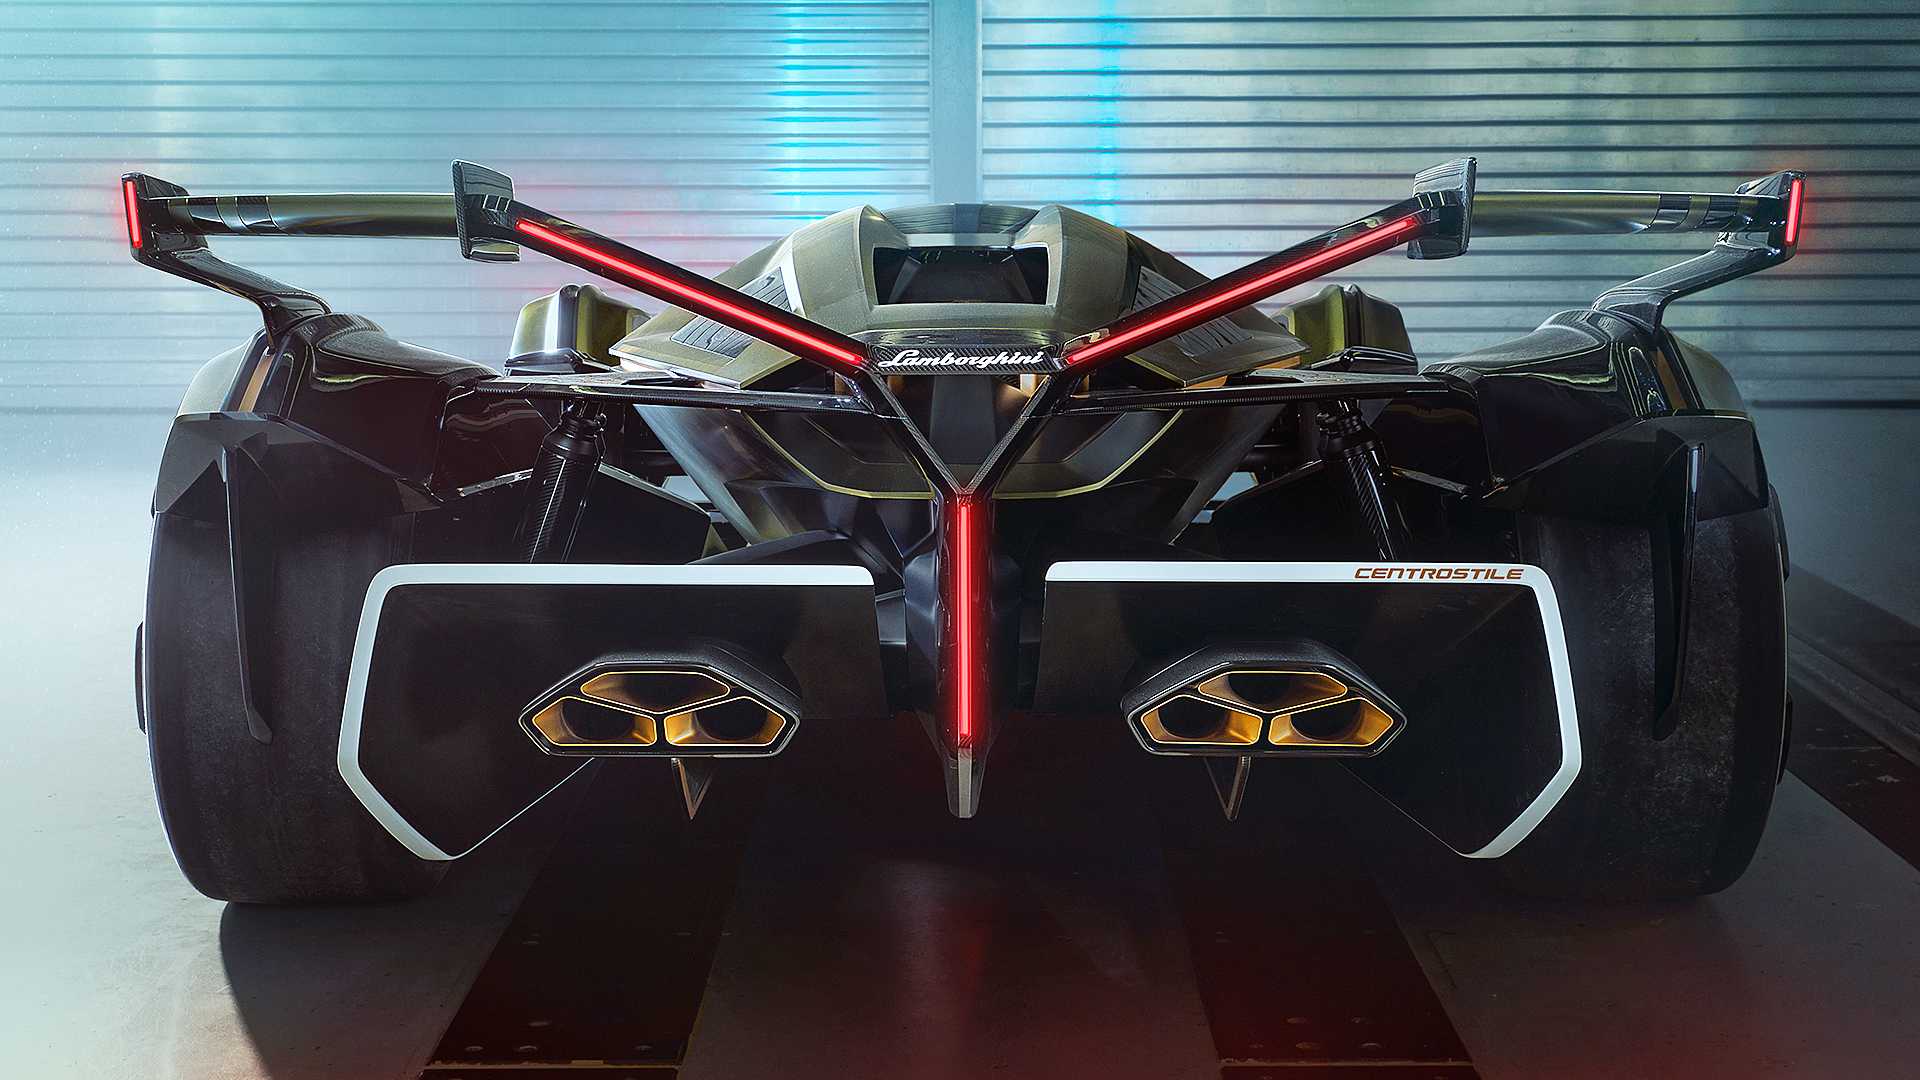 New Lamborghini Concept Resembles a More Futuristic